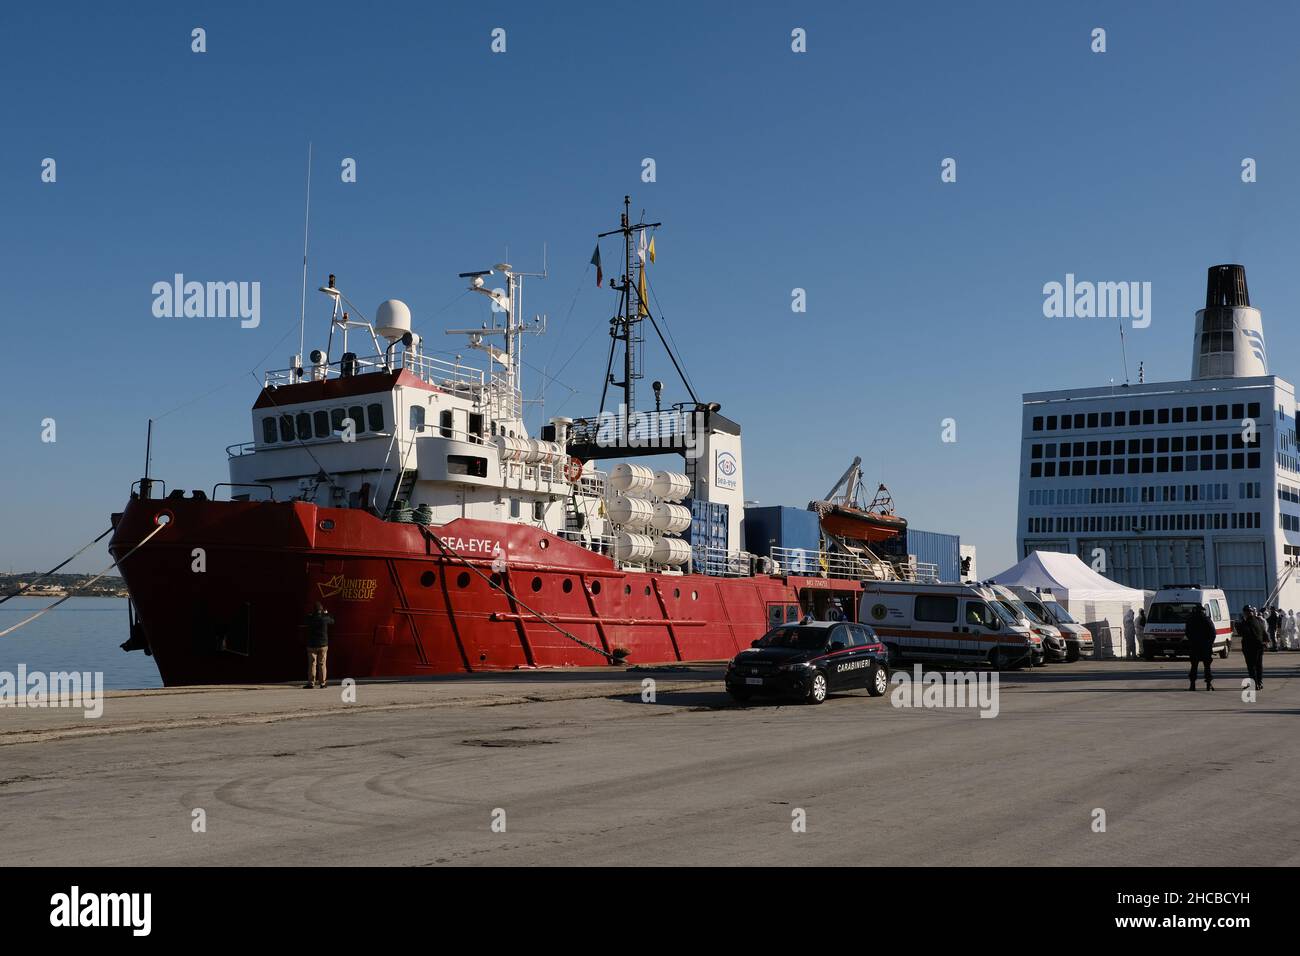 Le navire de secours humanitaire Sea-Eye 4 débarque à Pozzallo avec 214 migrants à bord Banque D'Images